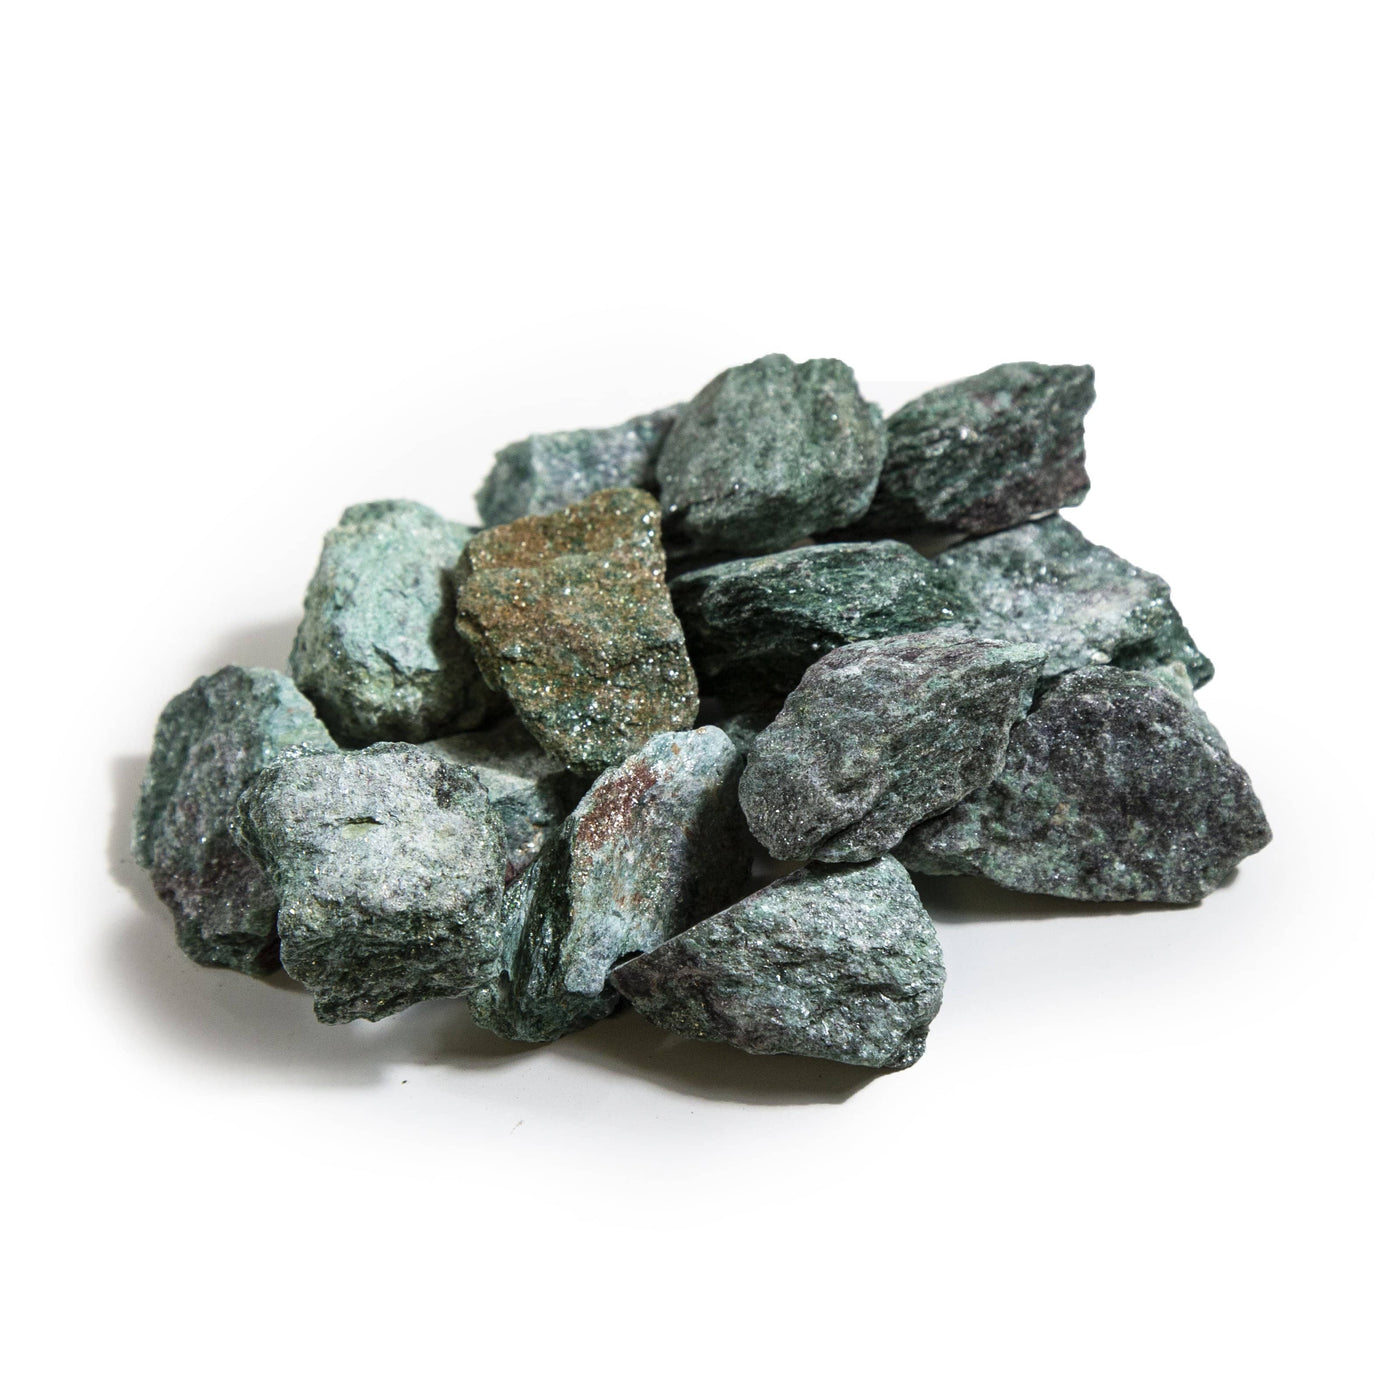 Fuchsite Rough Stones - in a pile